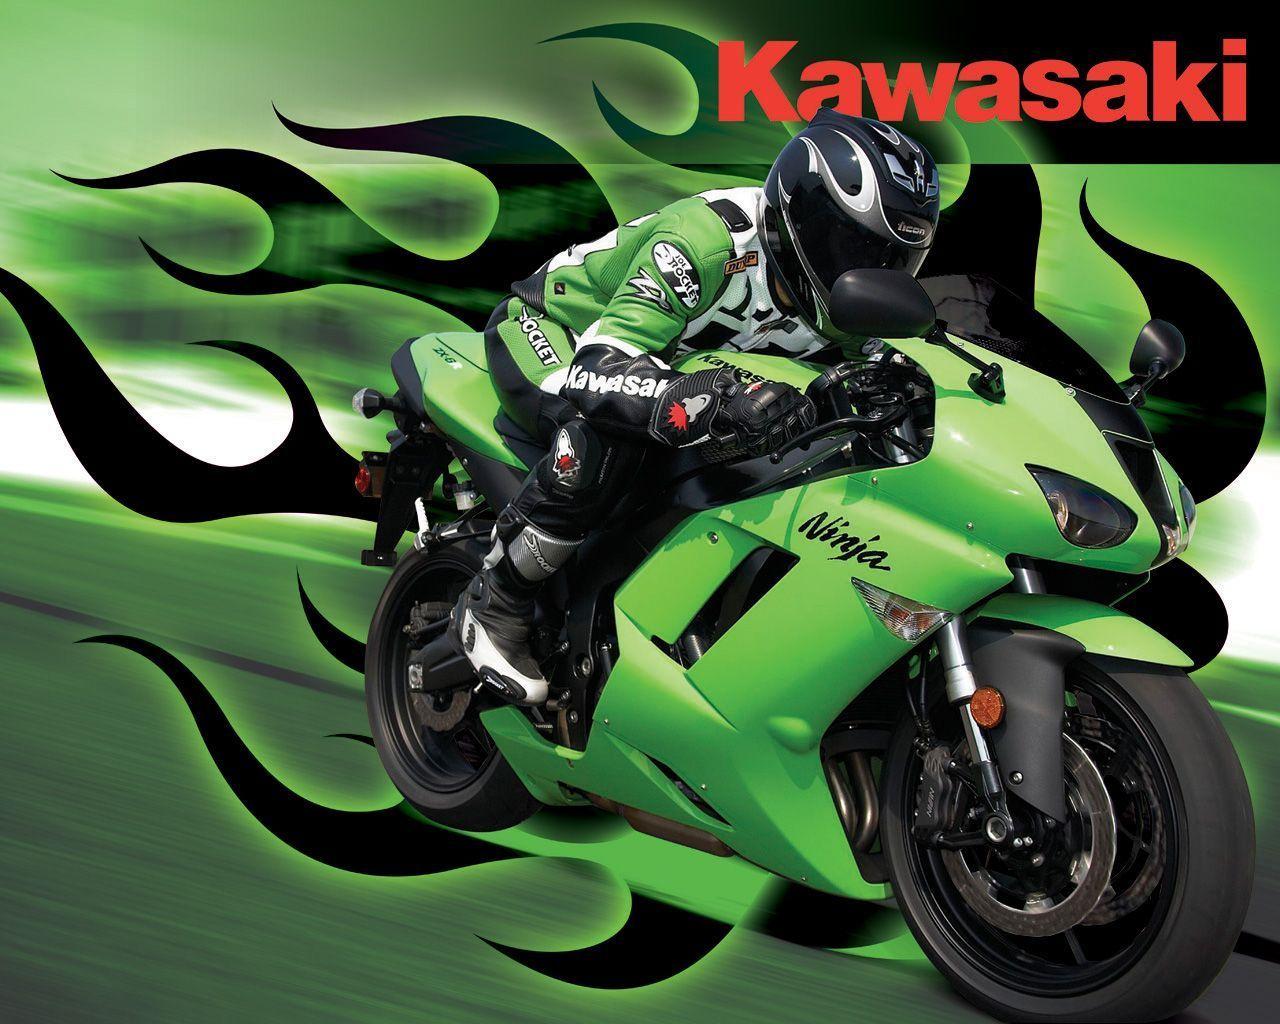 Download Kawasaki Ninja Wallpaper 1280x1024. Full HD Wallpaper